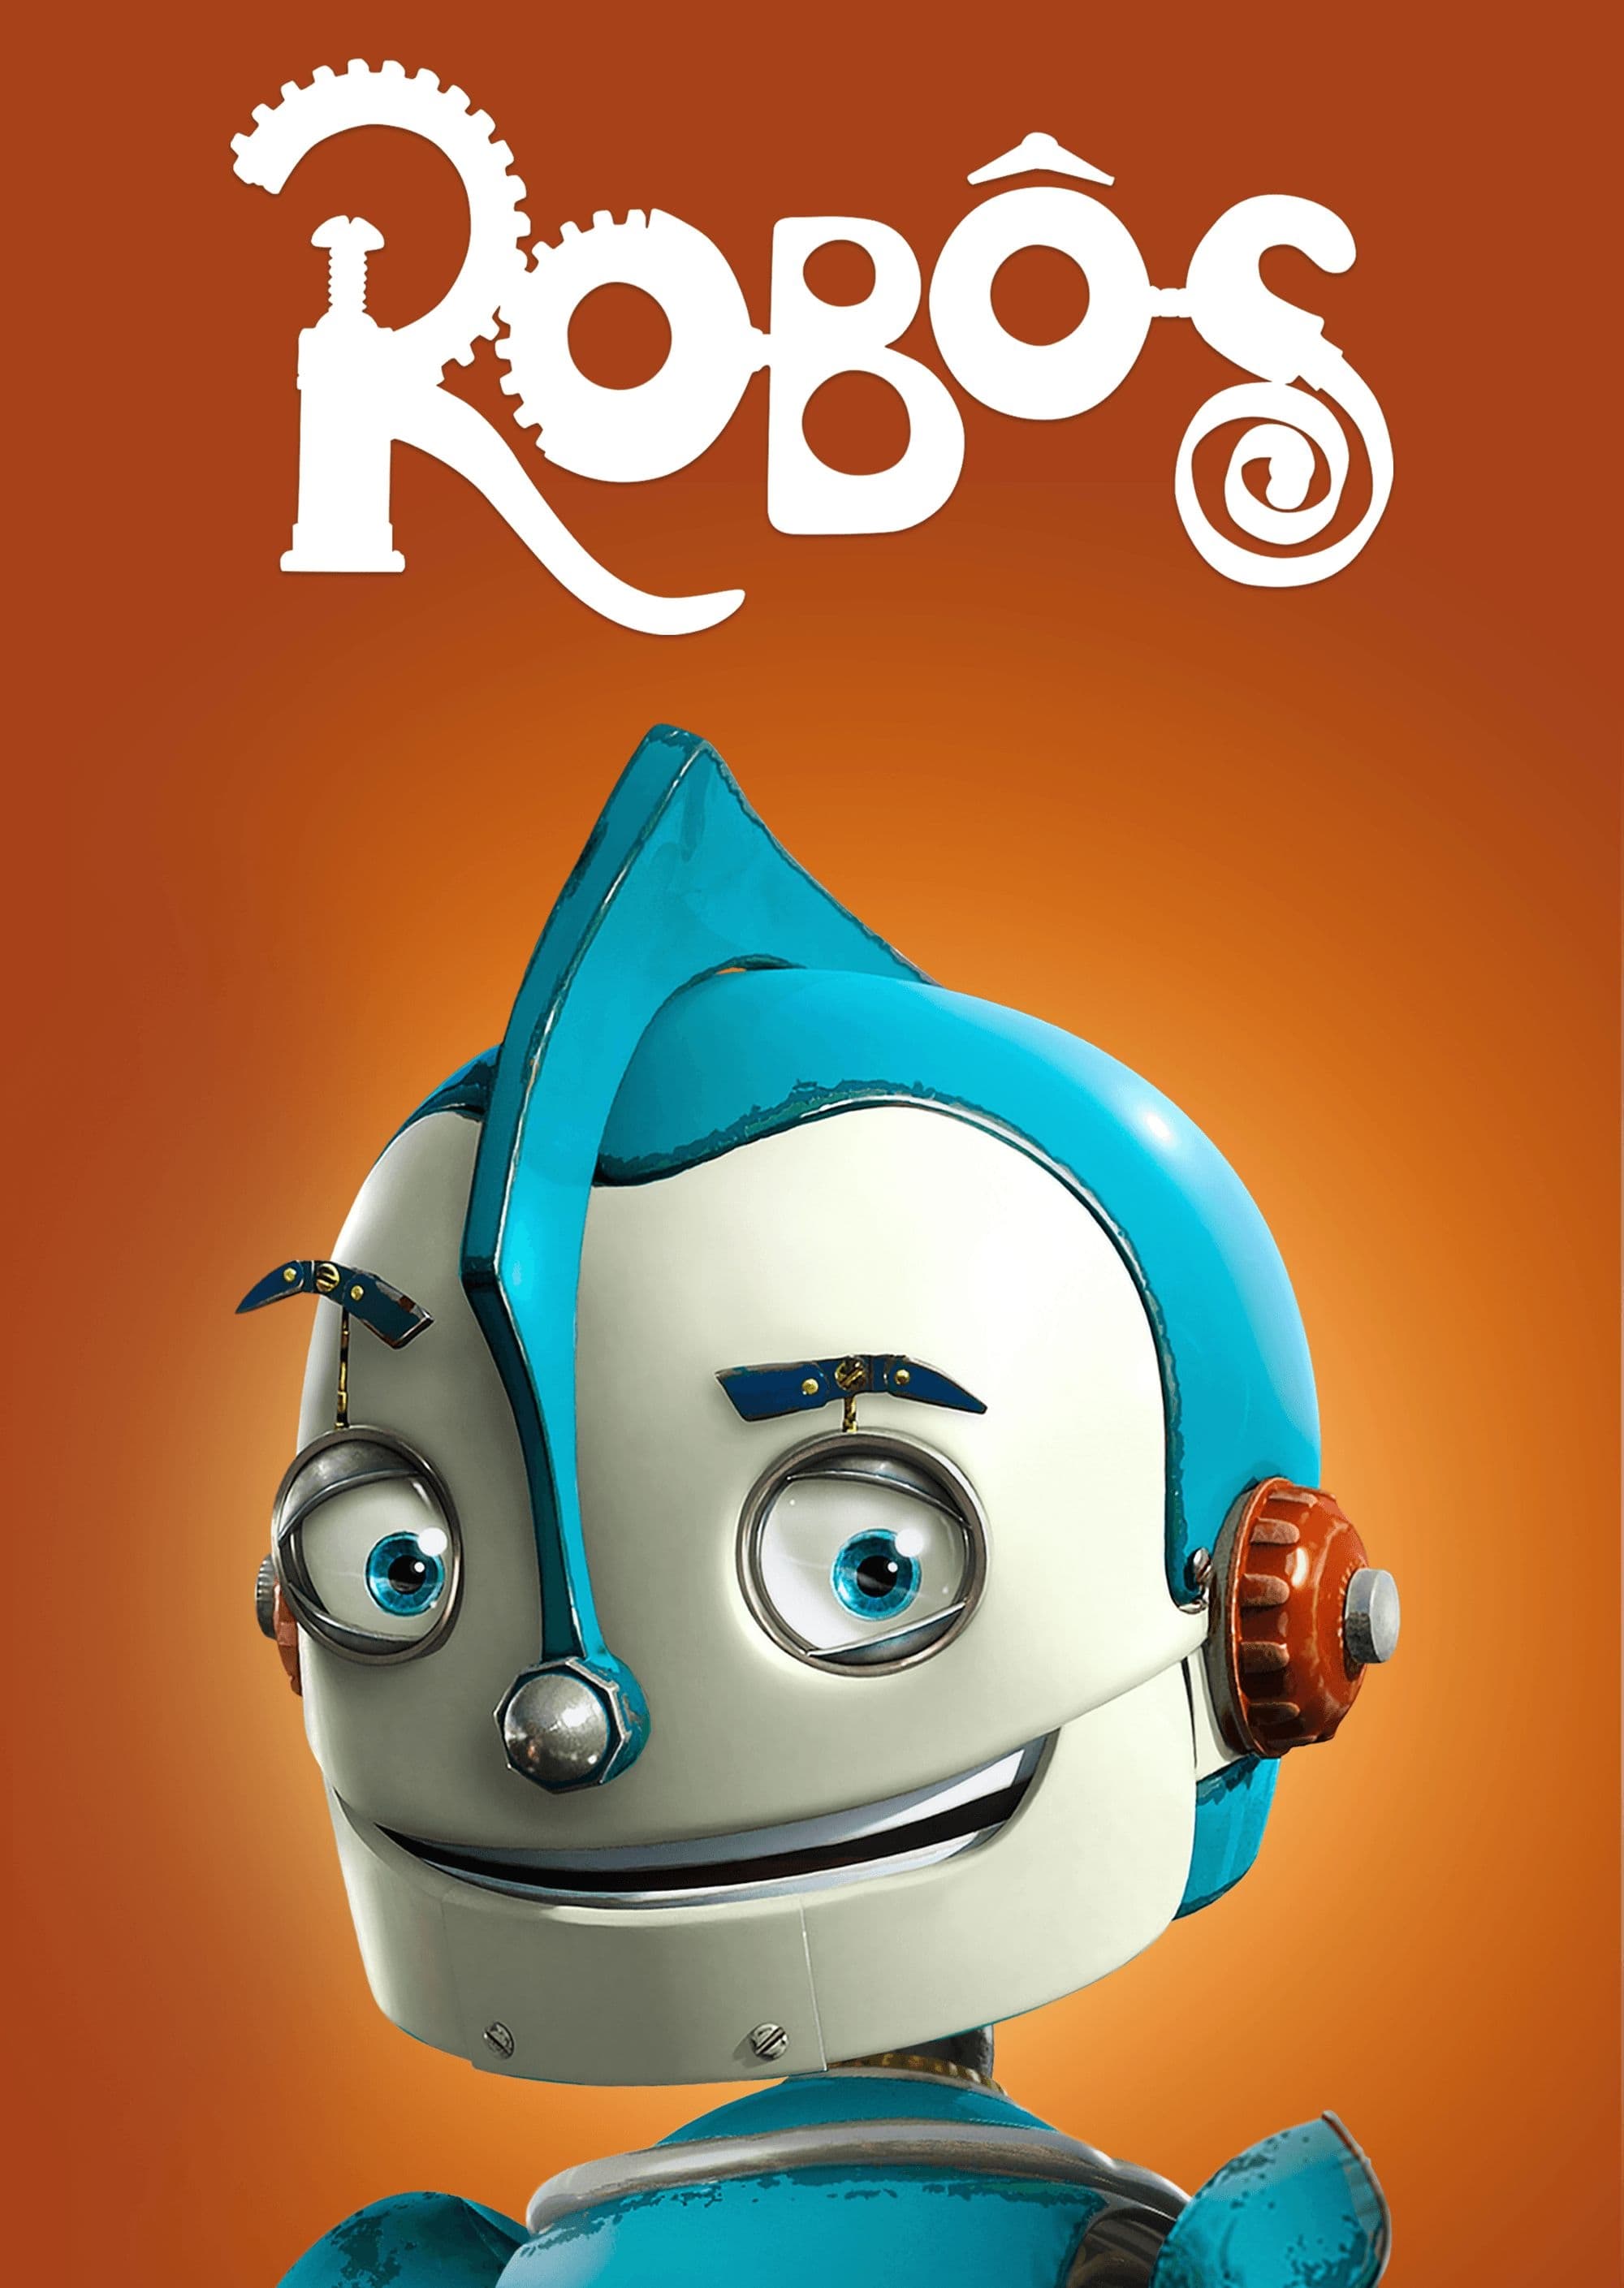 Mr. Robot, Dublapédia